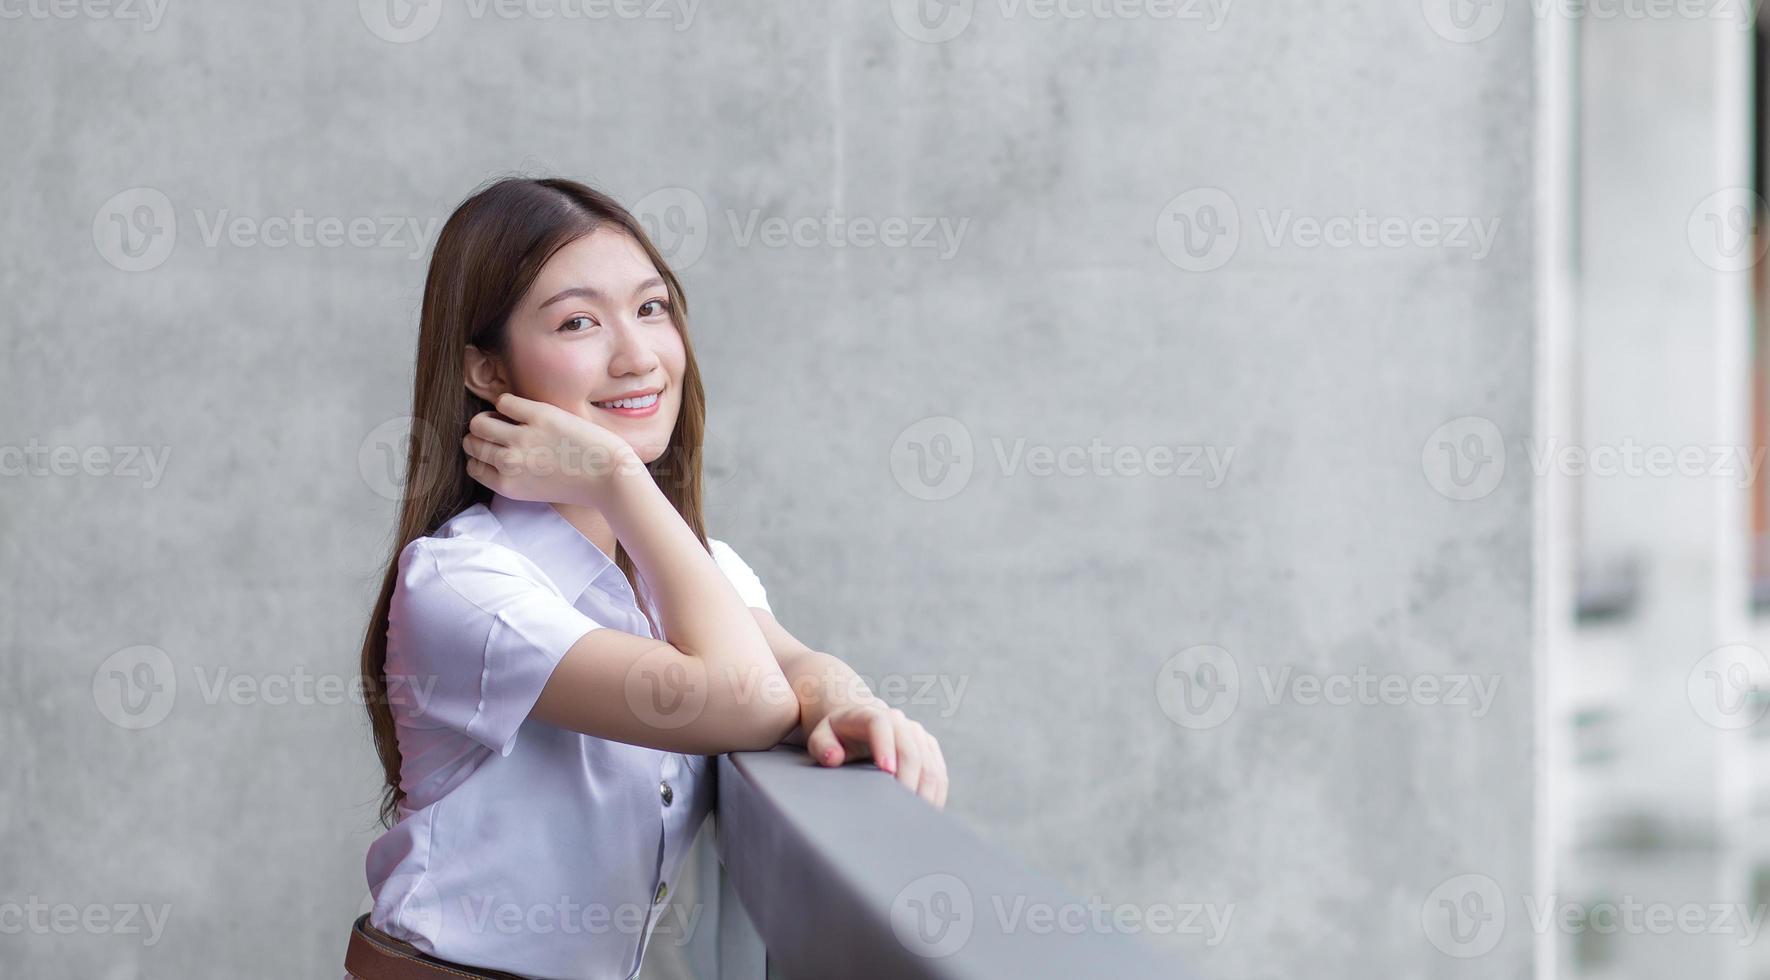 retrato de una estudiante tailandesa adulta con uniforme de estudiante universitario. hermosa chica asiática sentada sonriendo felizmente en la universidad. foto